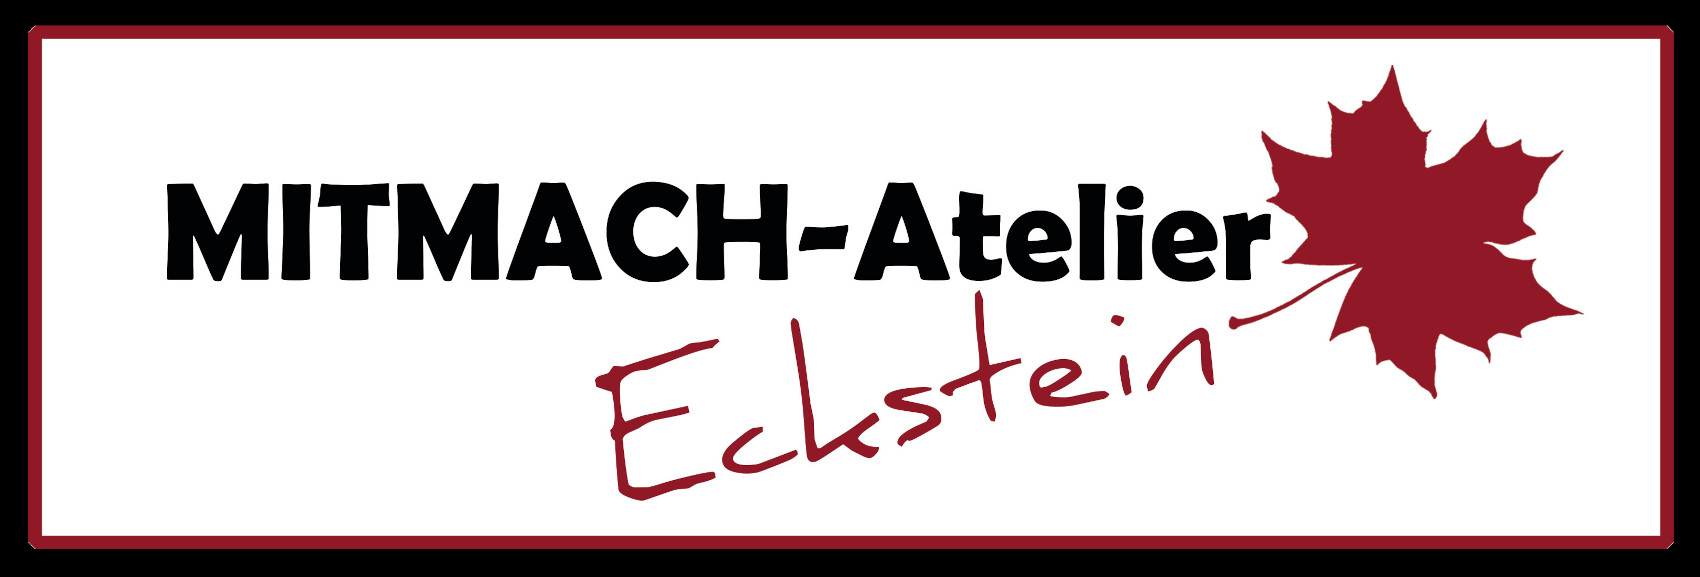 Logo von Mitmach-Atelier Eckstein